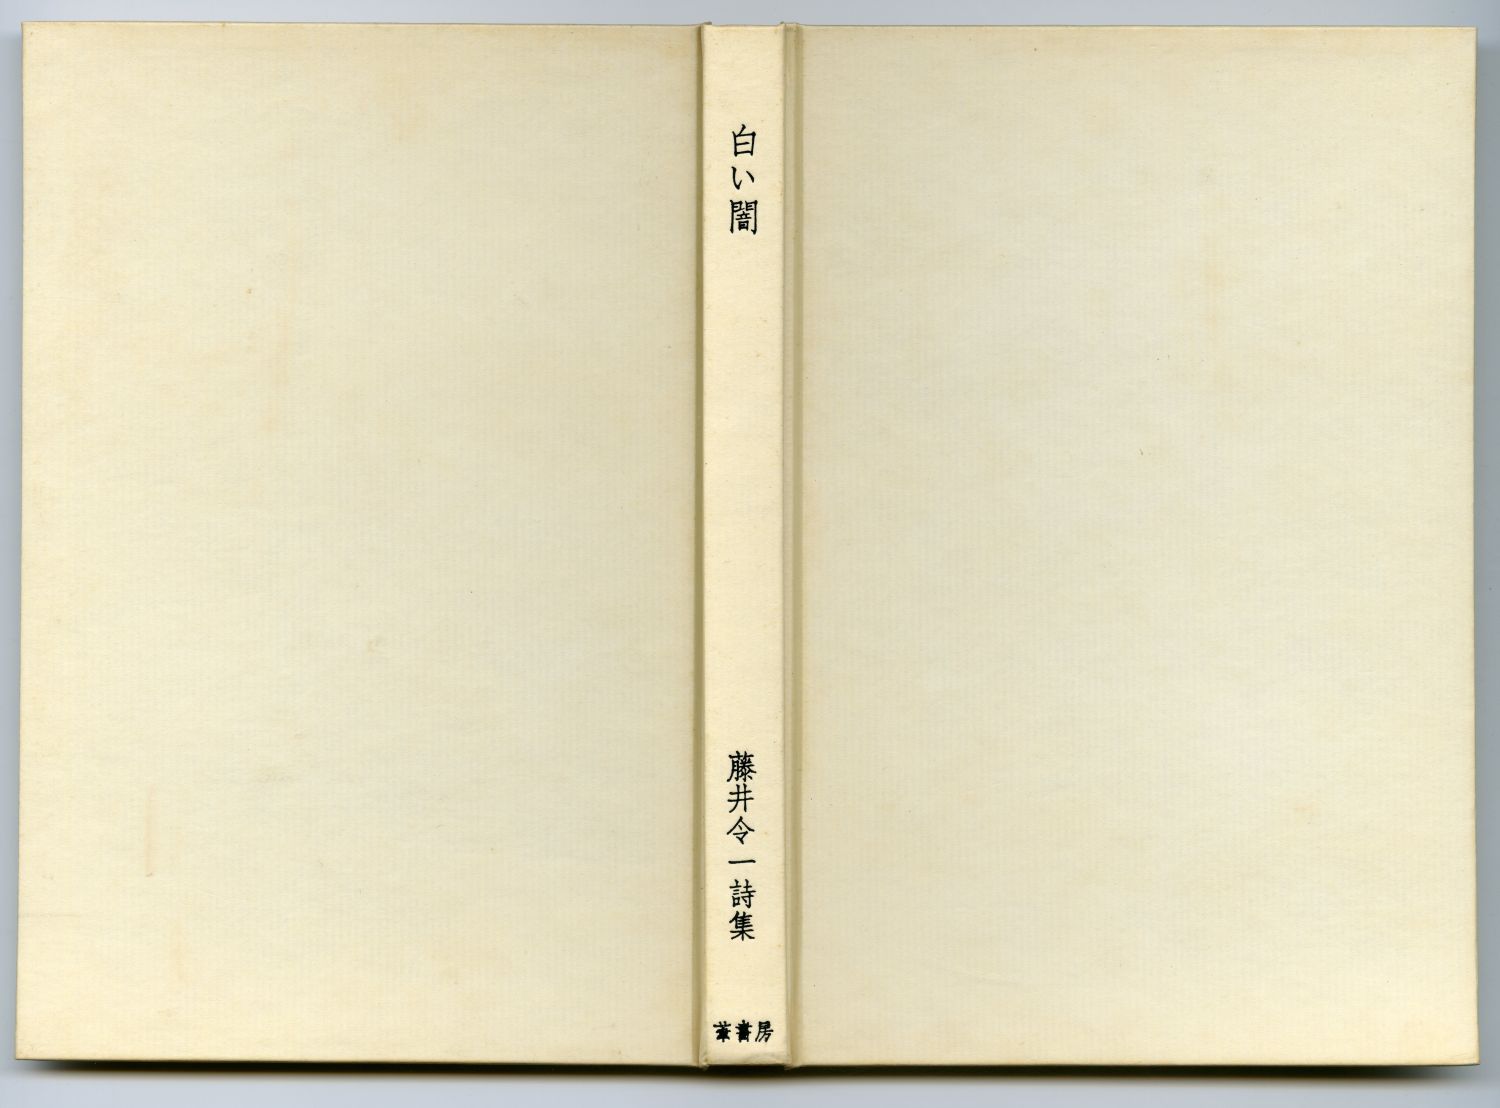 藤井令一『白い闇』（1978年、葦書房） 表紙